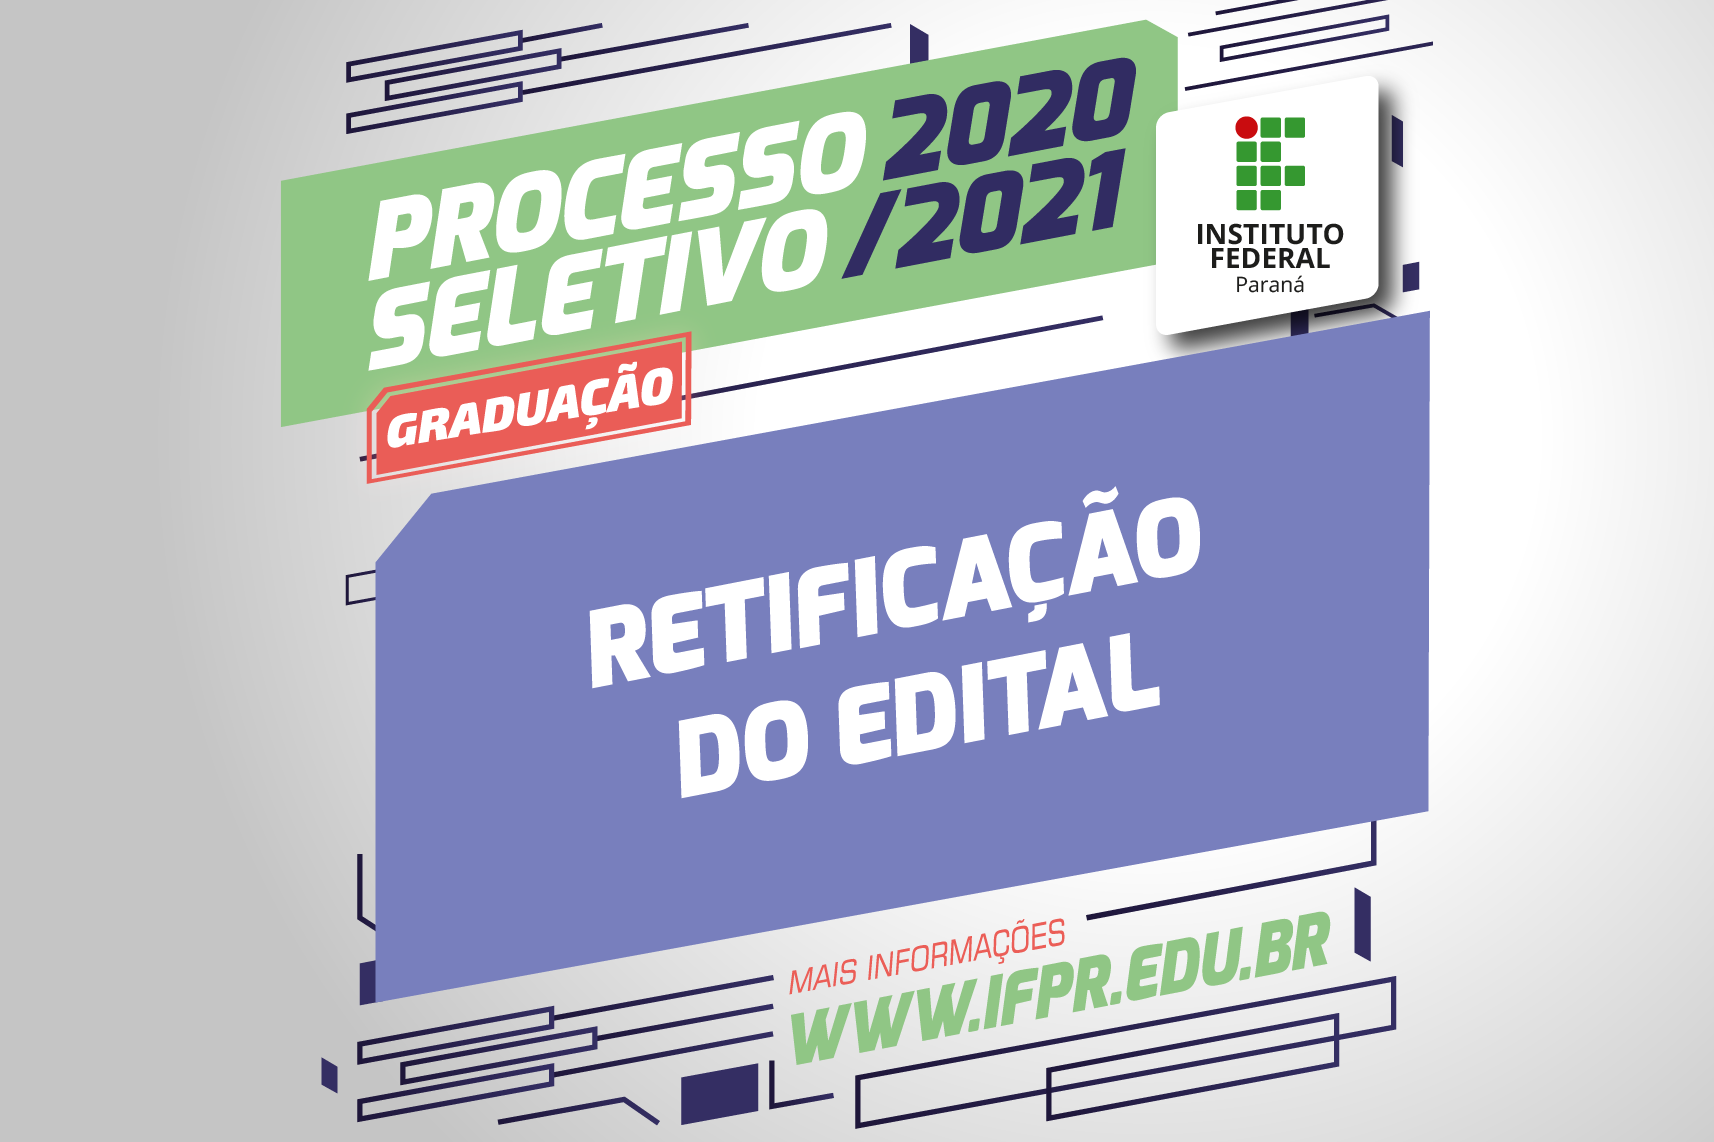 "Processo Seletivo 2021/2022. Retificação do edital"